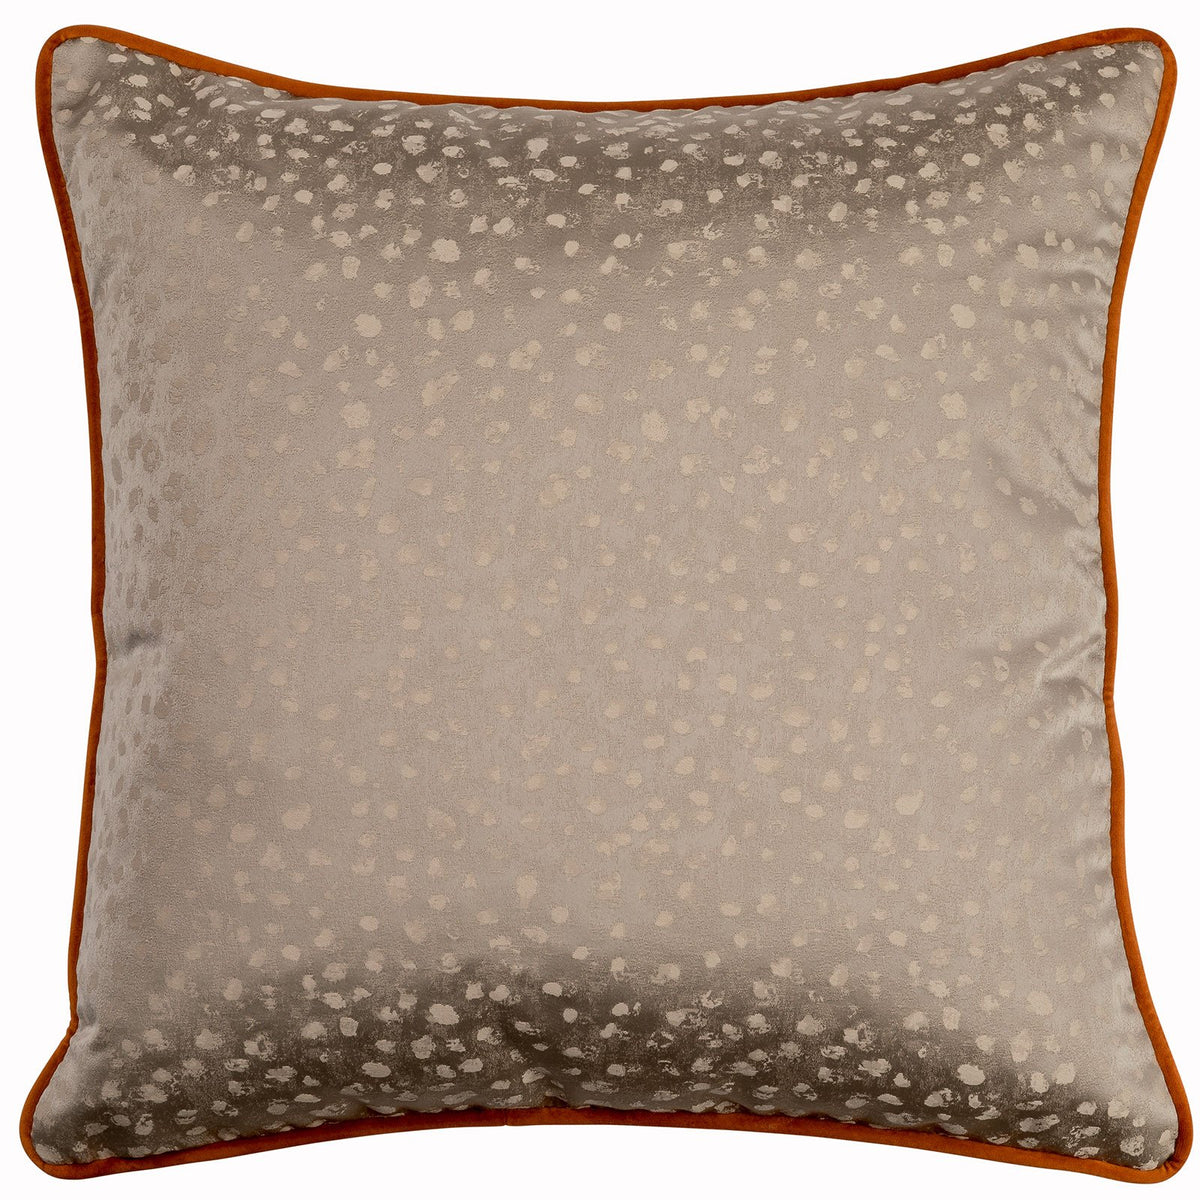 Clay San Marco Cushion